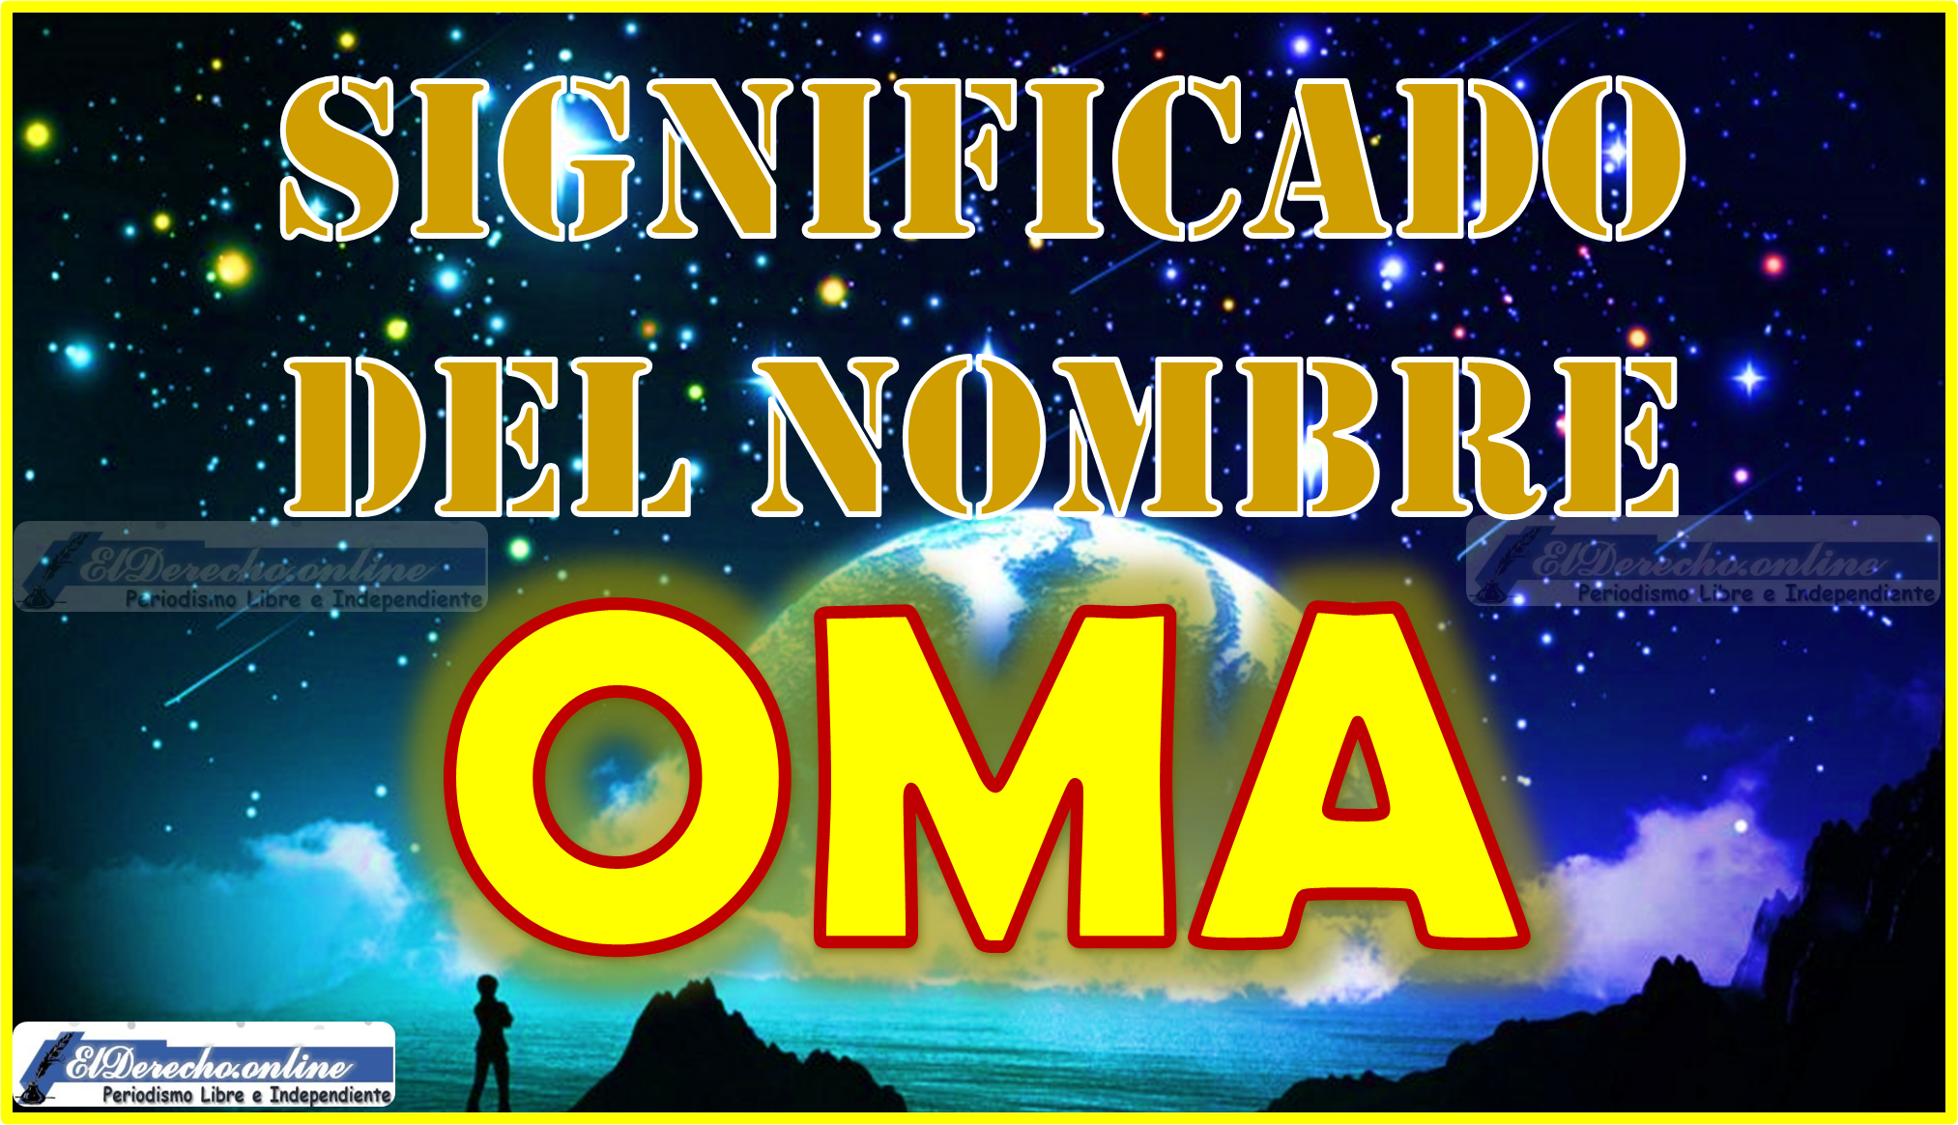 Significado del nombre Oma, su origen y más